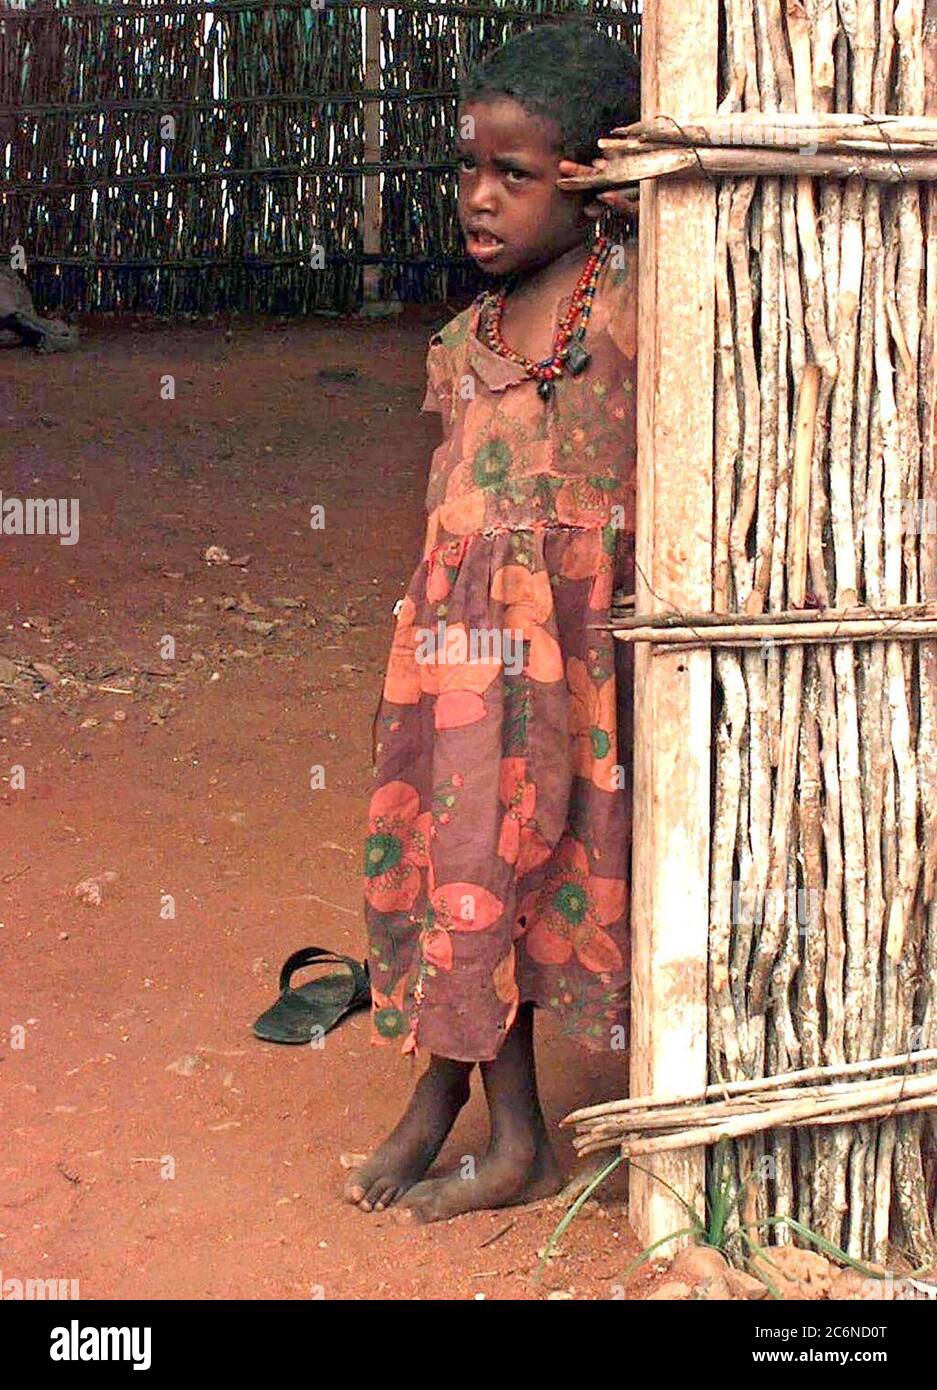 1992 - recto, medio cerca de una niña somalí, aproximadamente seis o siete años. Ella lleva un vestido de flores y se inclina contra la entrada de una choza de bambú con piso de tierra. Foto de stock